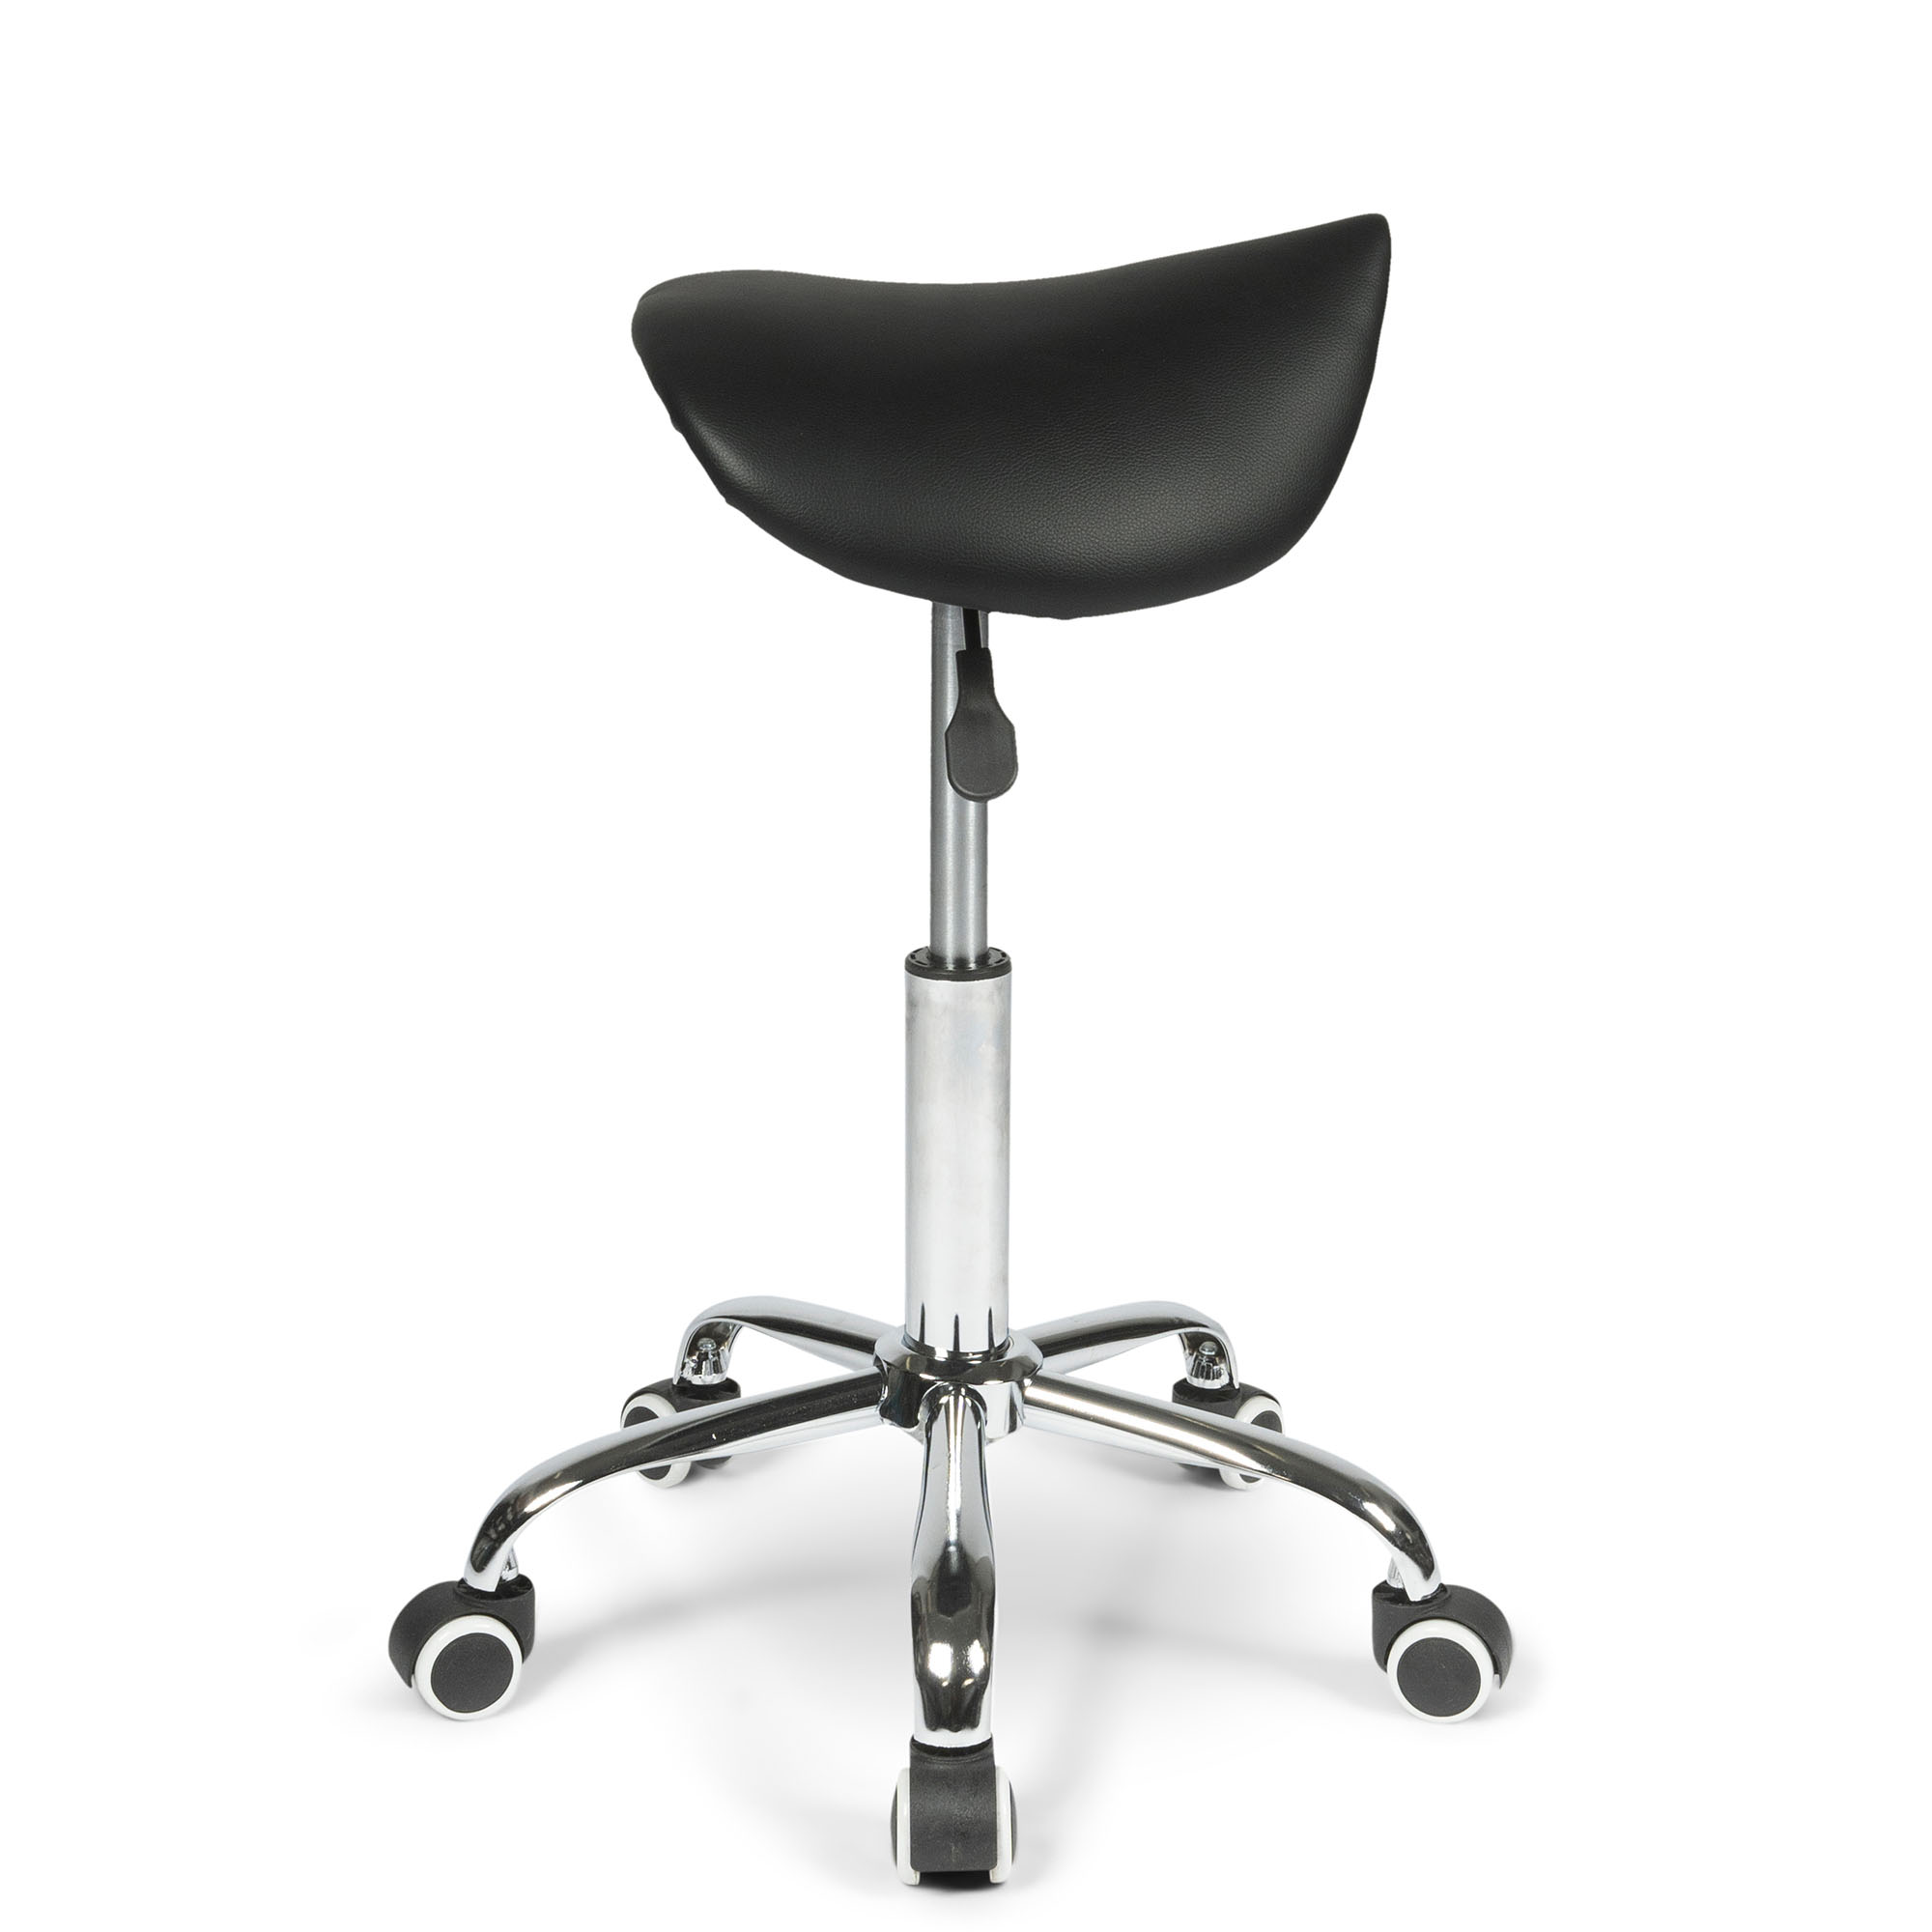 seat of the dunimed ergonomic saddle stool